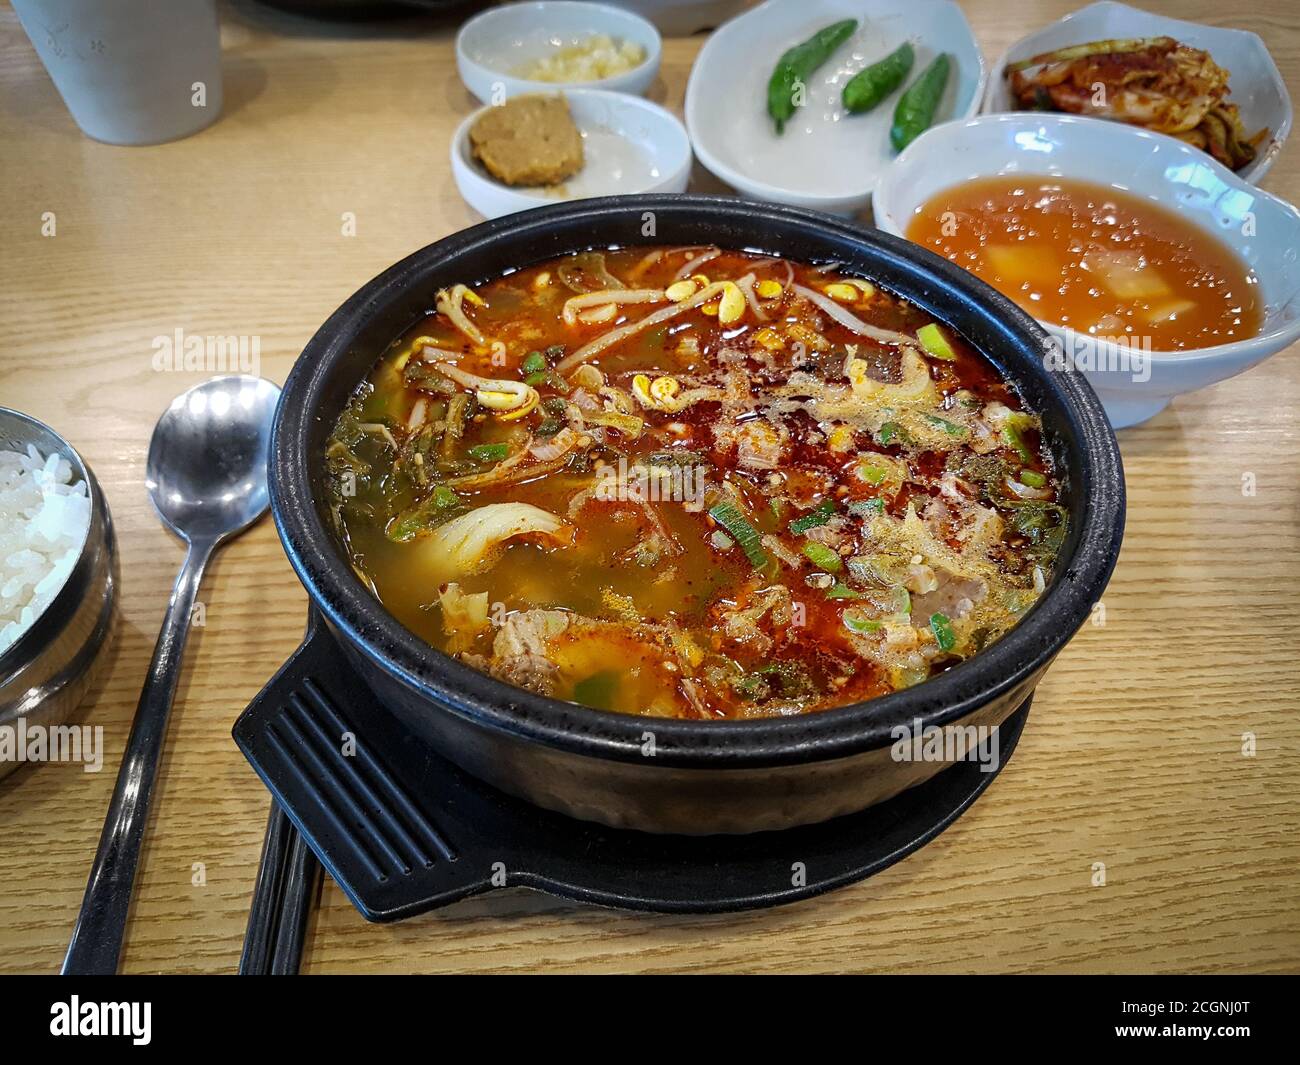 Haejang-guk oder Hangover-Suppe - Suppe, die in der koreanischen Küche als Kater-Kur gegessen wird. In Scheiben geschnittenes Rindsblut ähnlich dem schwarzen Pudding in einer Rinderbrühe. Stockfoto